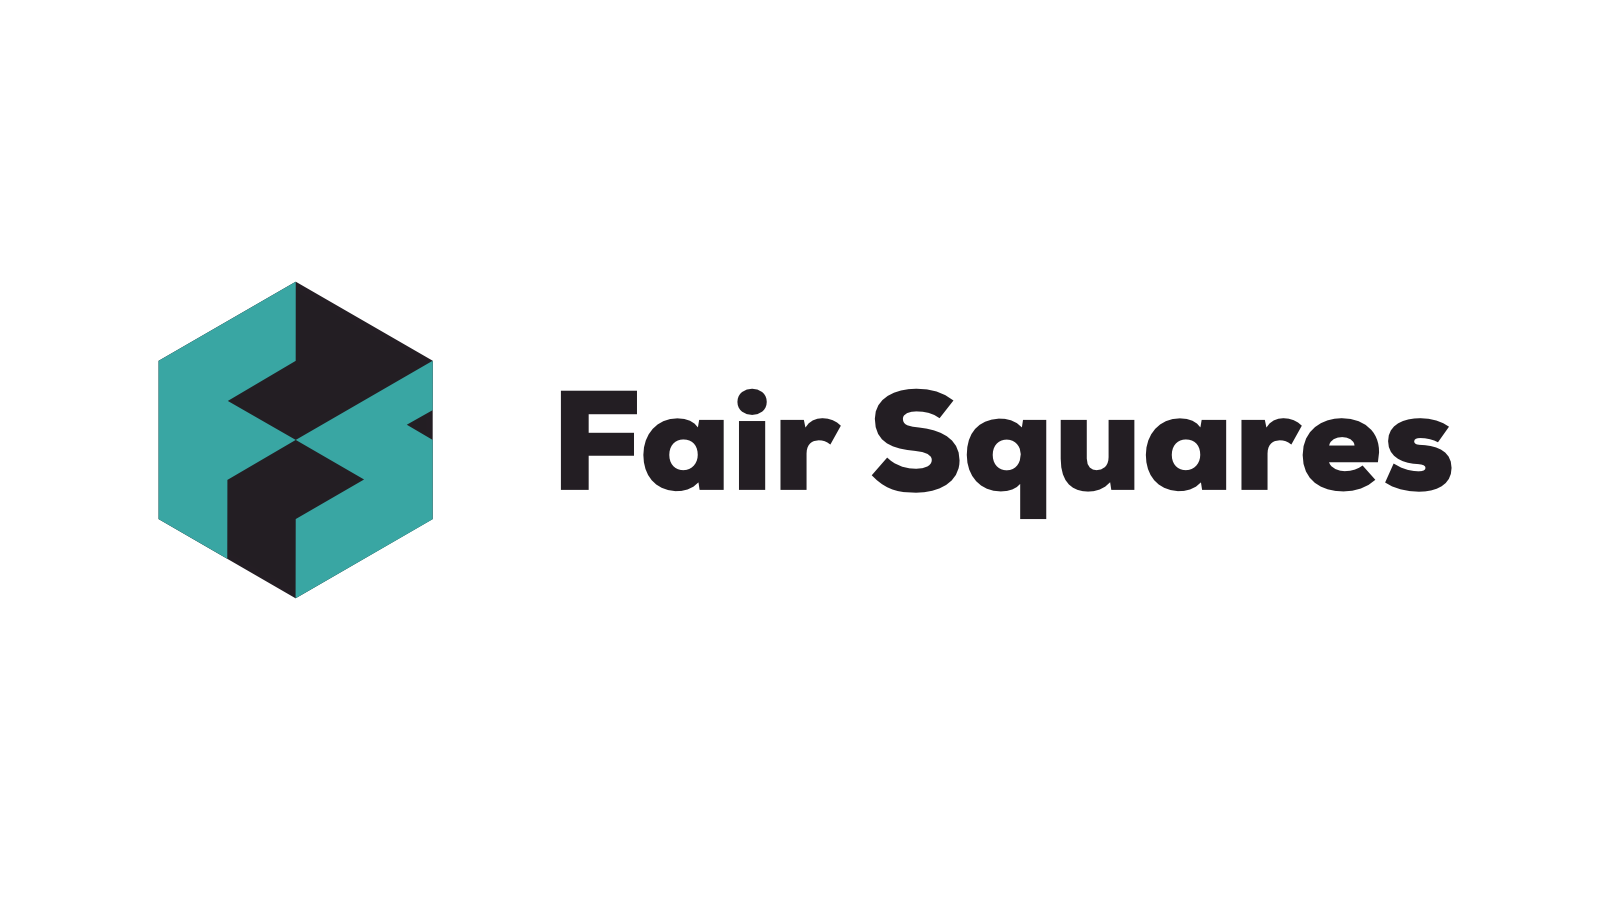 Fair Squares website logo